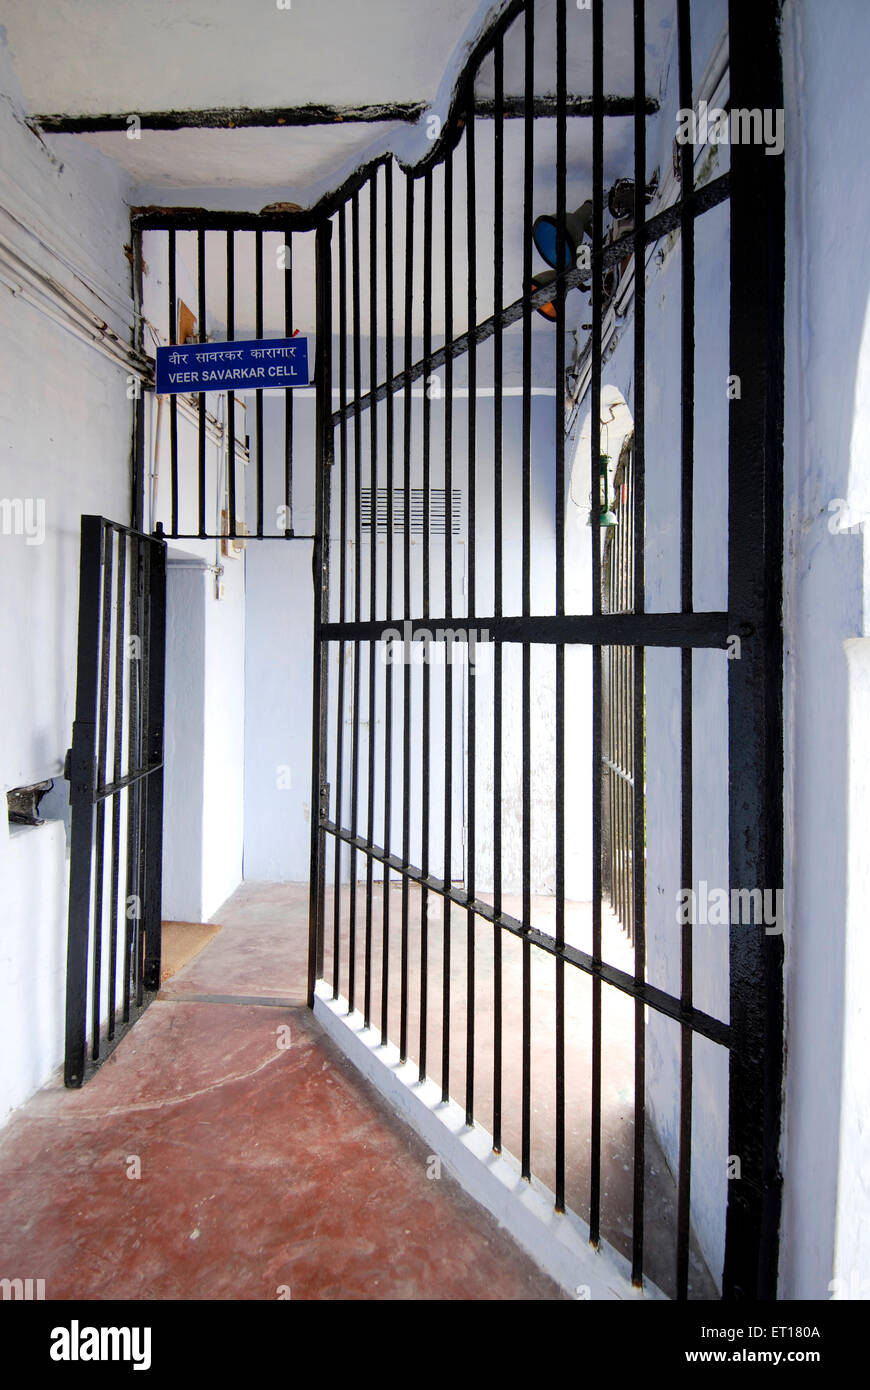 Veer Savarkar cellule de prison cellulaire ; Port Blair ; Îles Andaman du Sud ; baie du Bengale ; Inde Octobre 2008 Banque D'Images